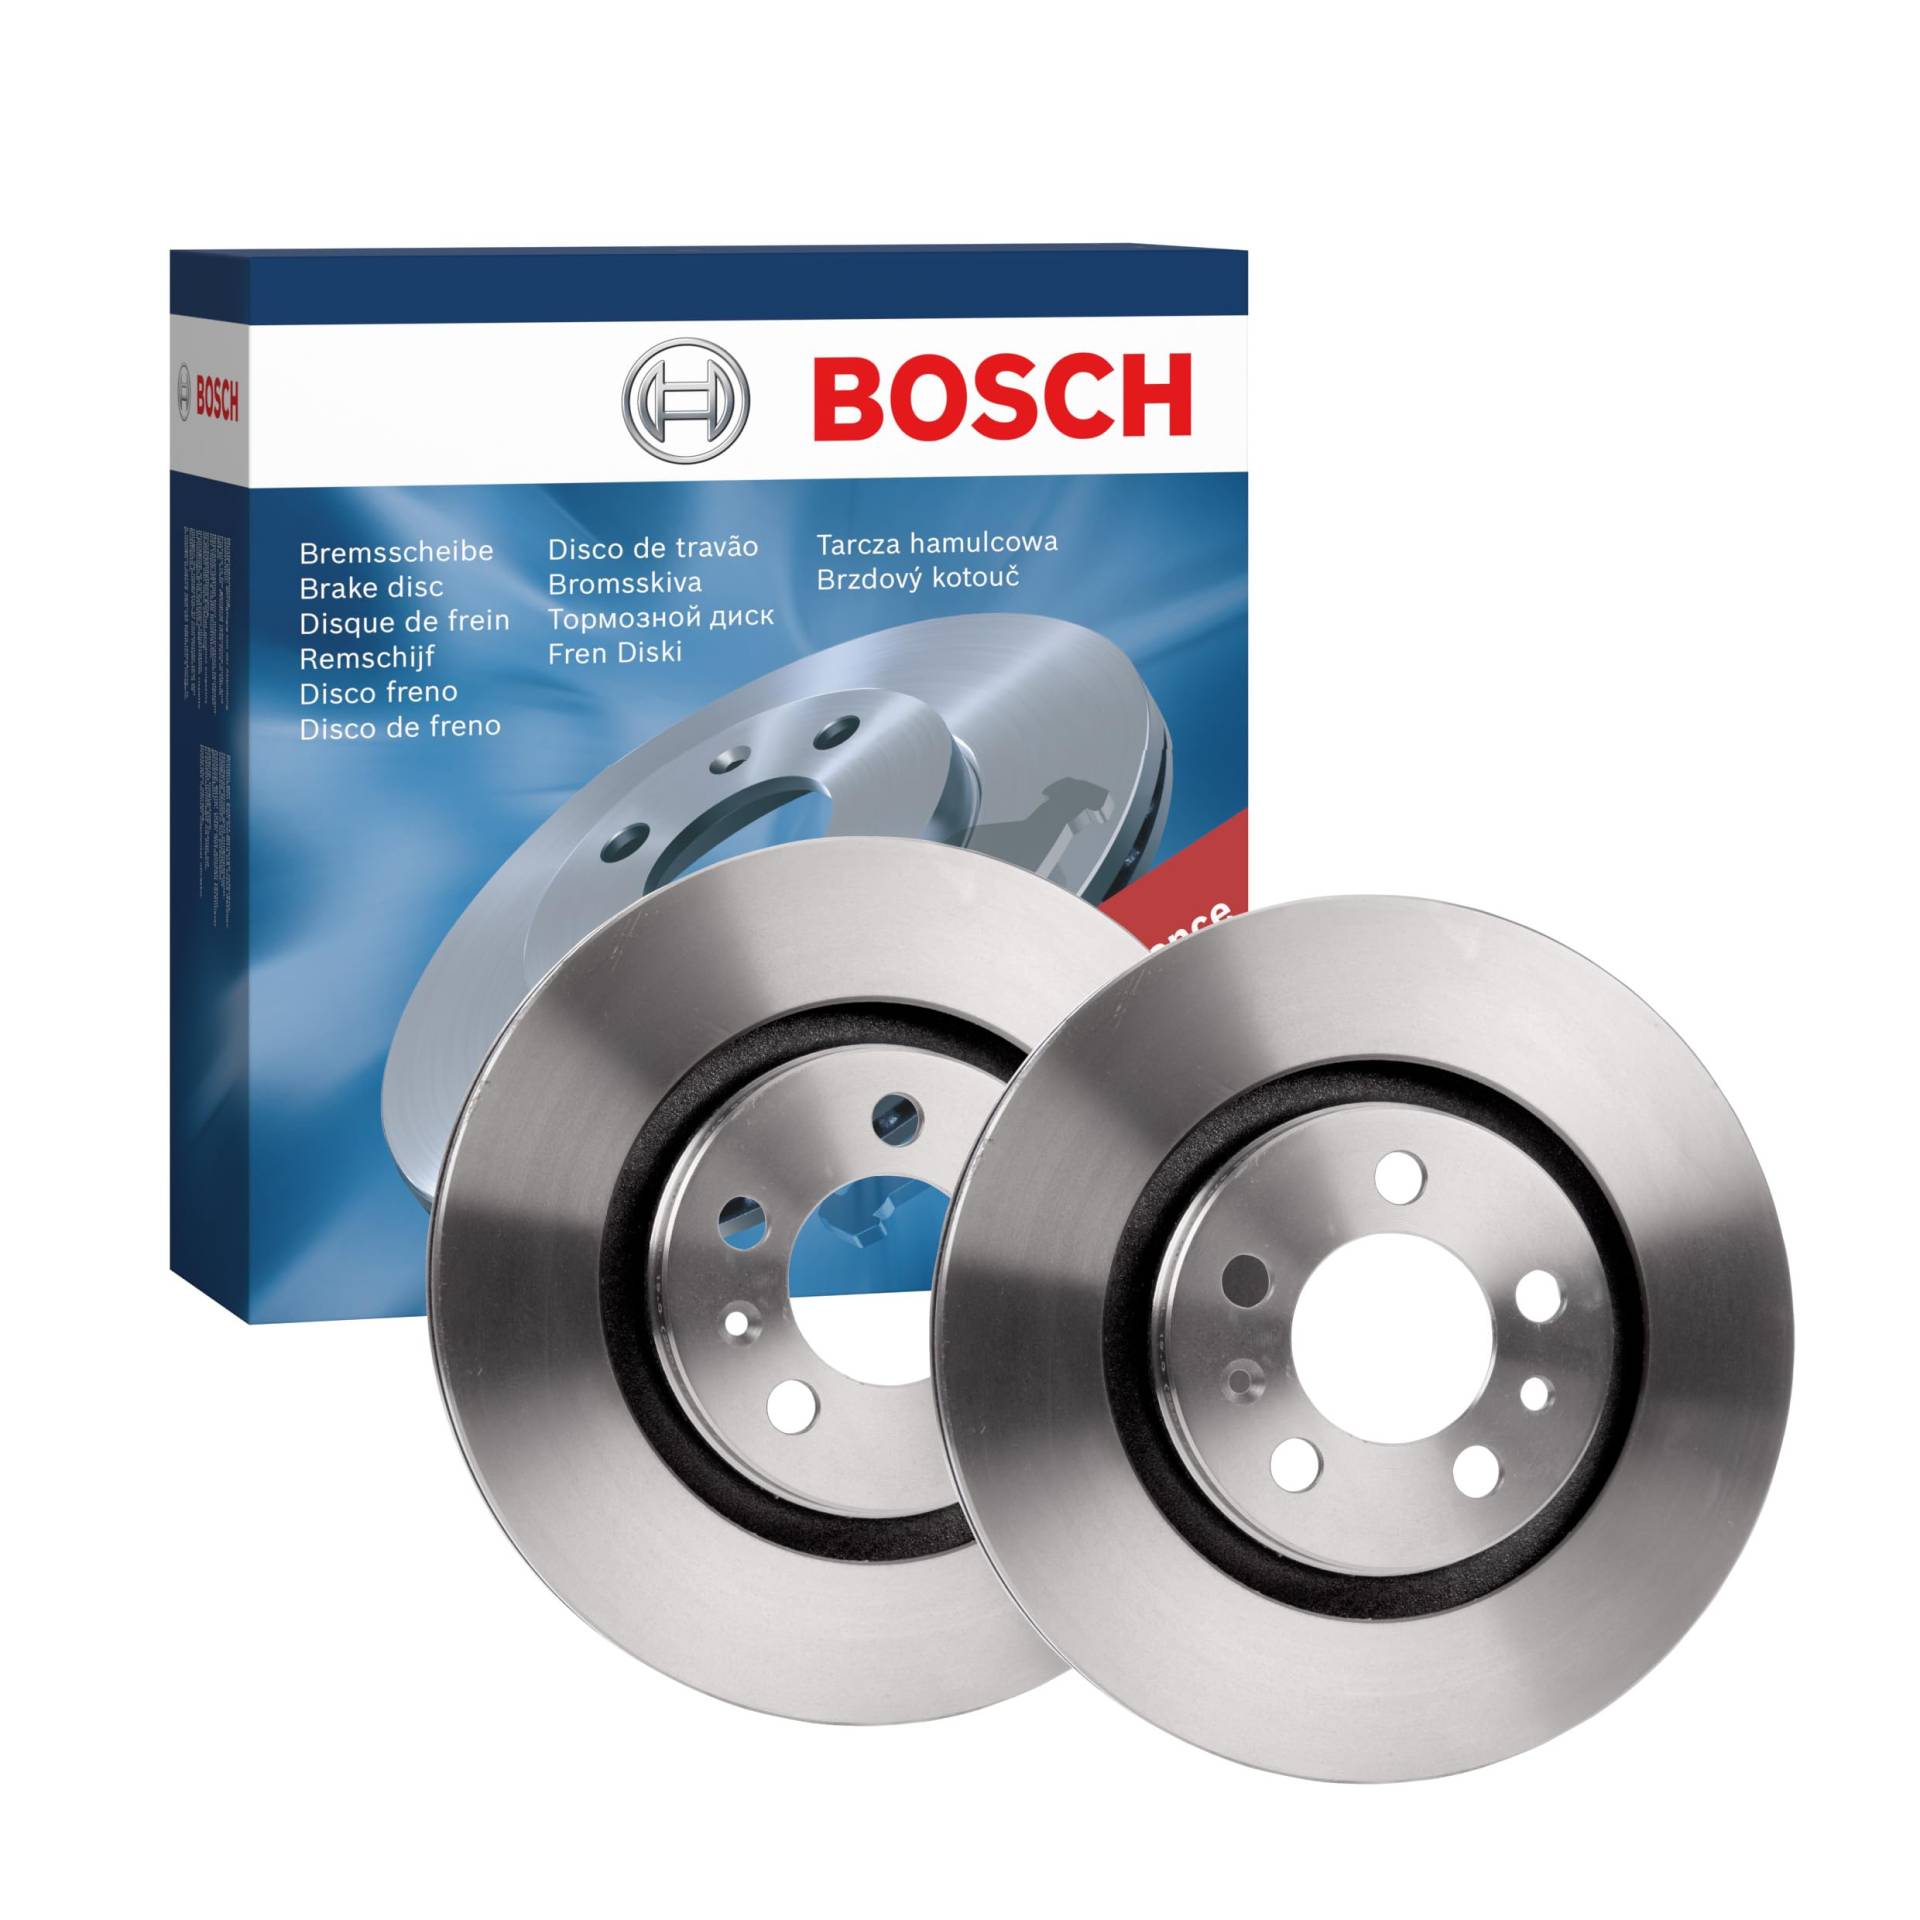 Bosch BD1985 Bremsscheiben - Vorderachse - ECE-R90 Zertifizierung - zwei Bremsscheiben pro Set von Bosch Automotive